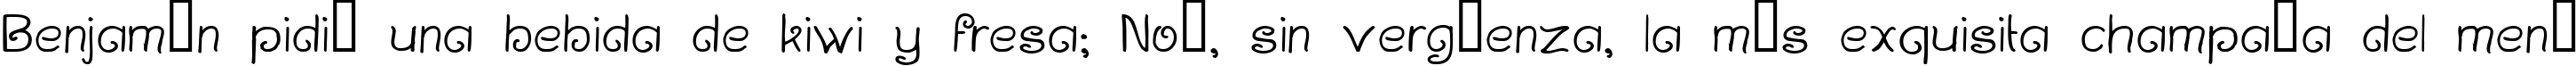 Пример написания шрифтом Curlmudgeon текста на испанском